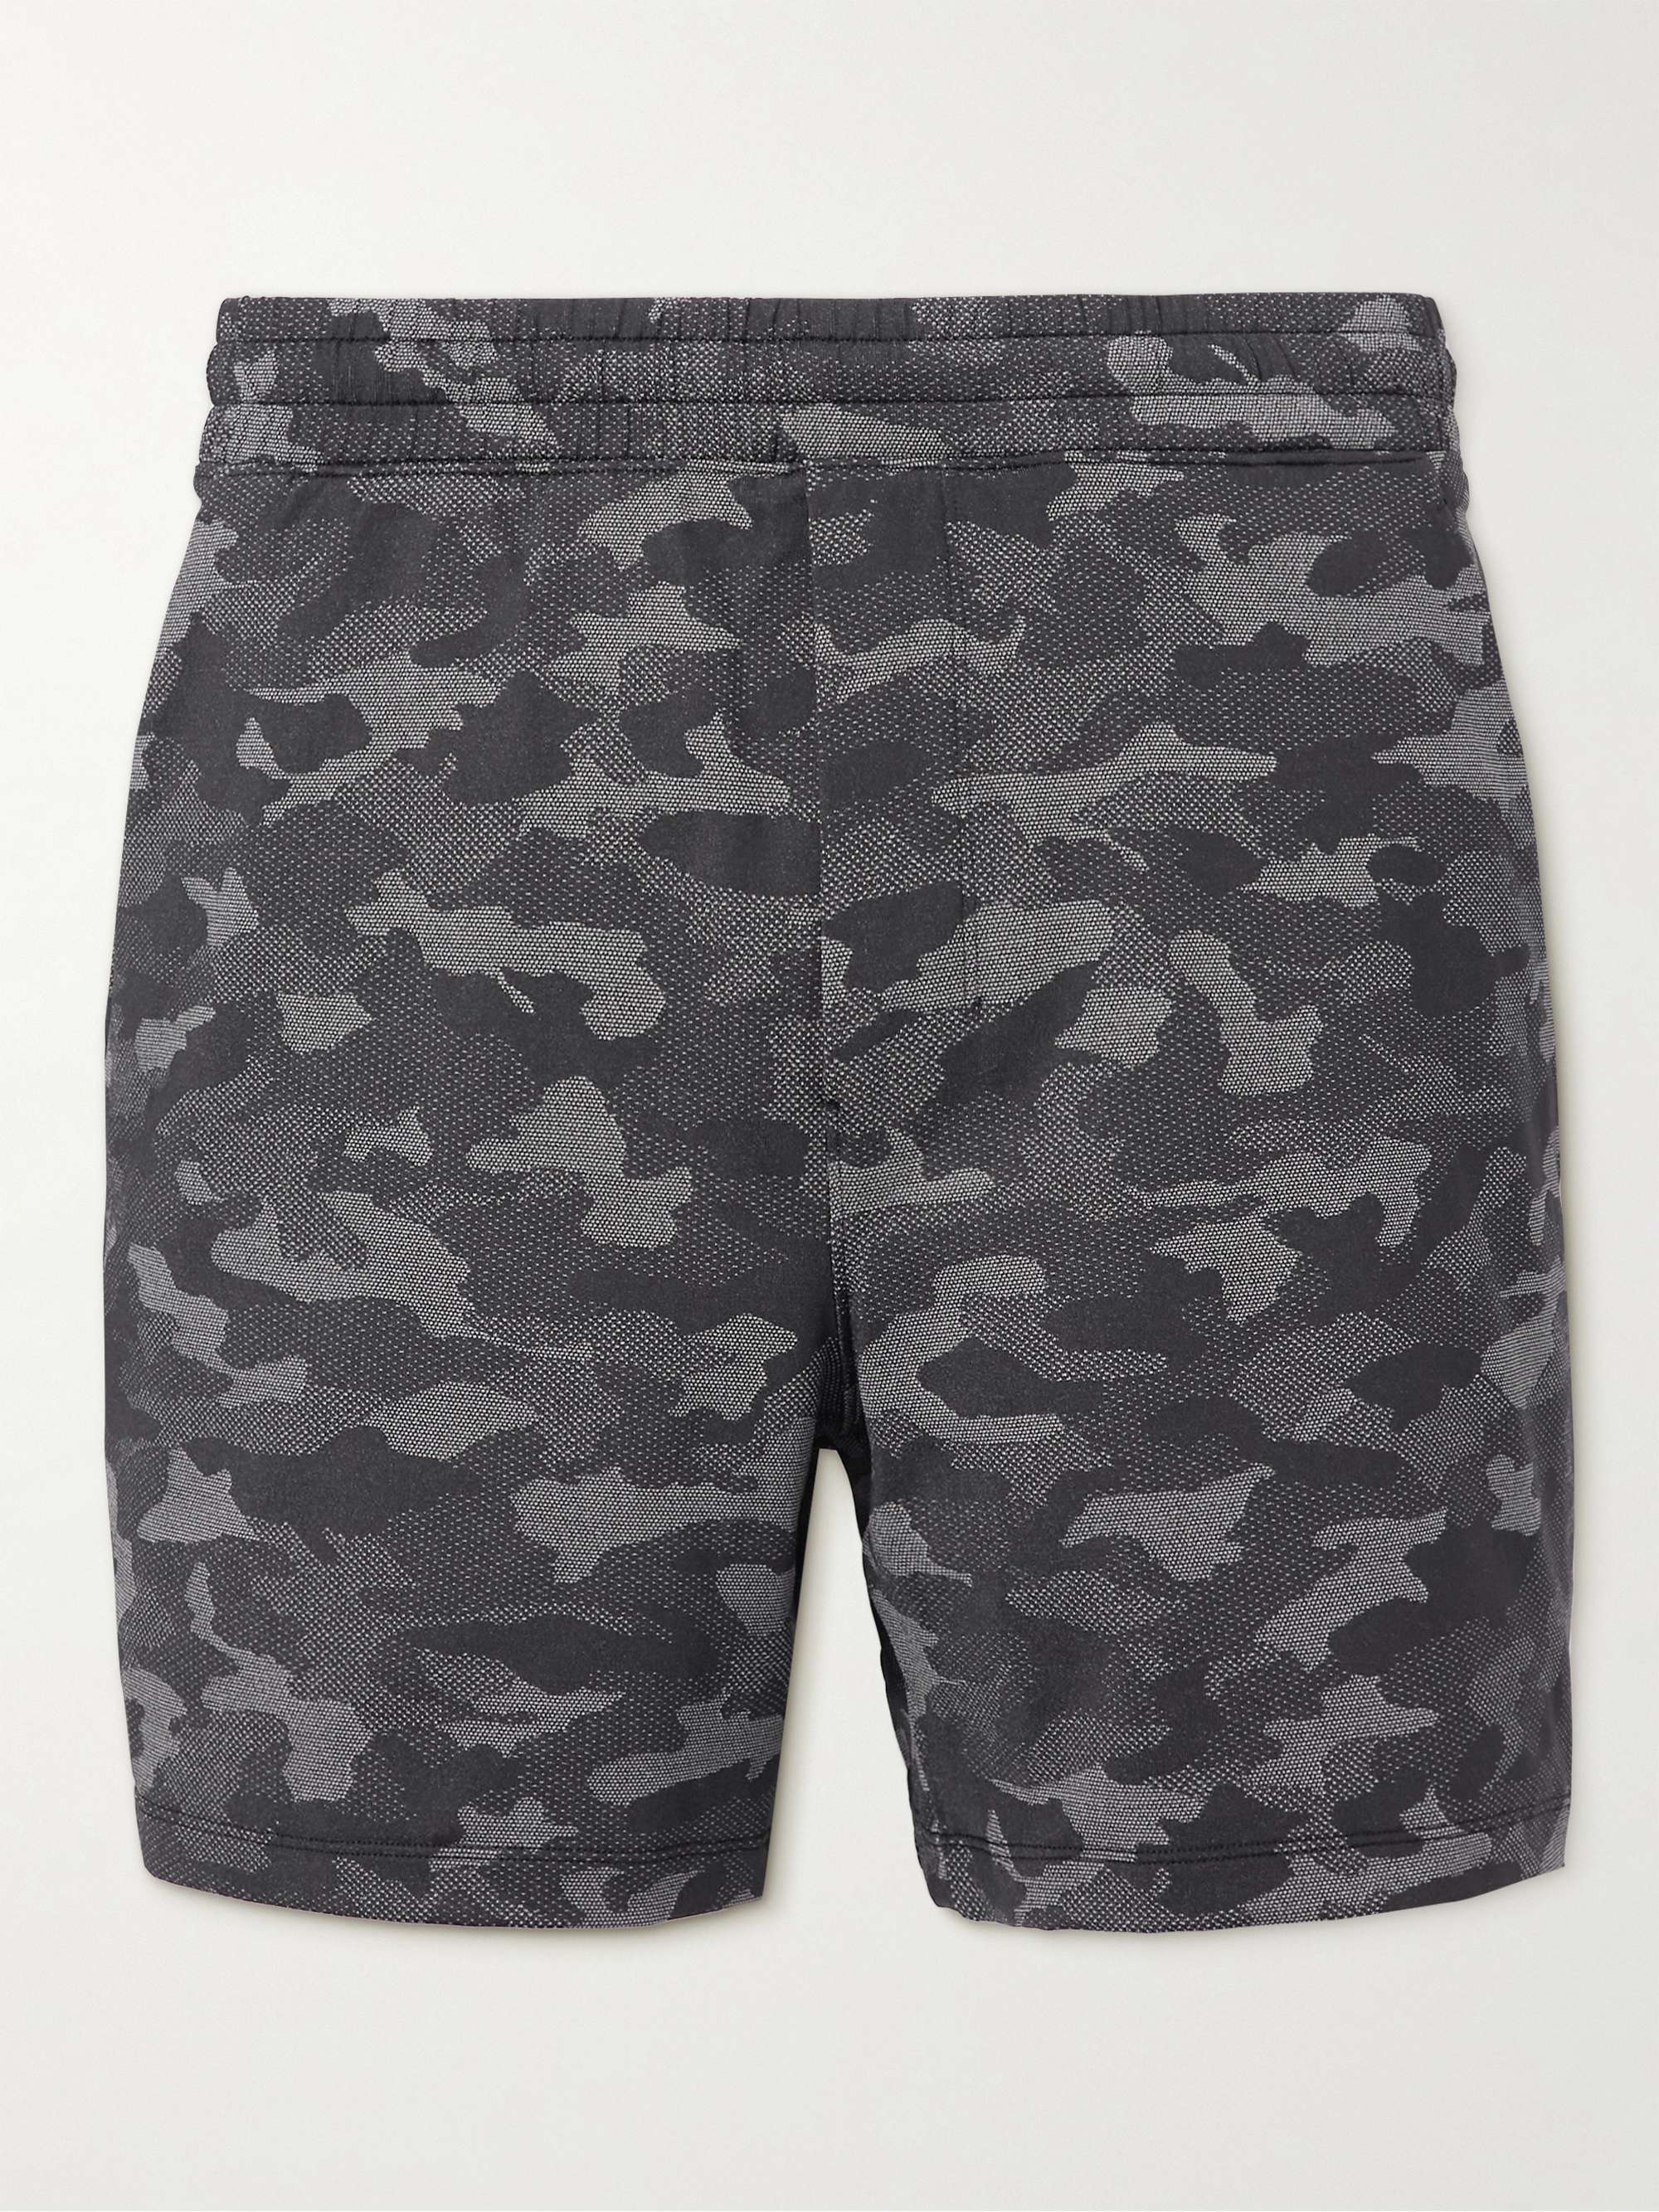 LULULEMON Pace Breaker 5" Camouflage-Jacquard Mesh Shorts